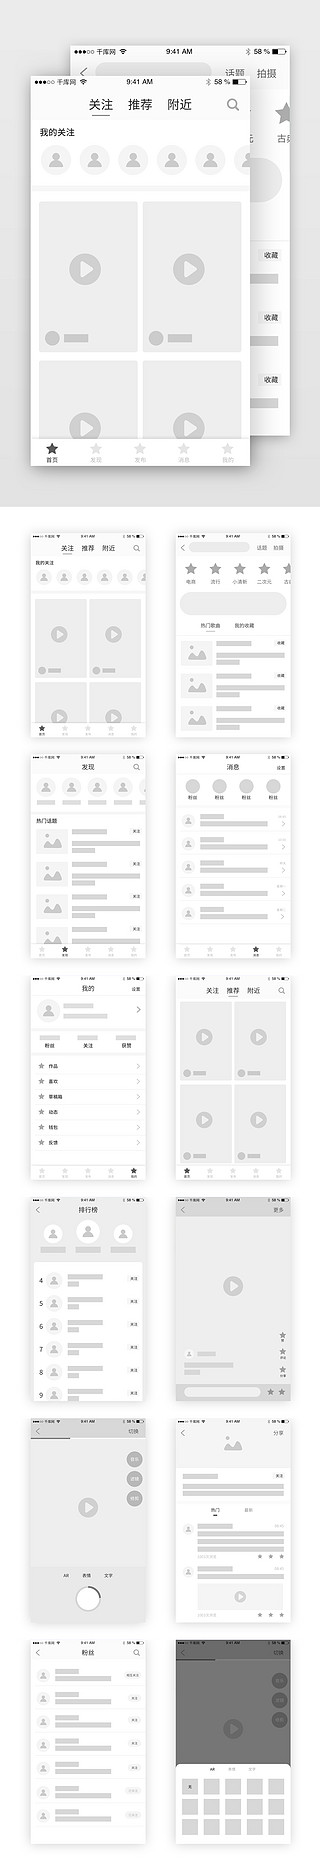 报纸排版UI设计素材_短视频直播排版模板原型图